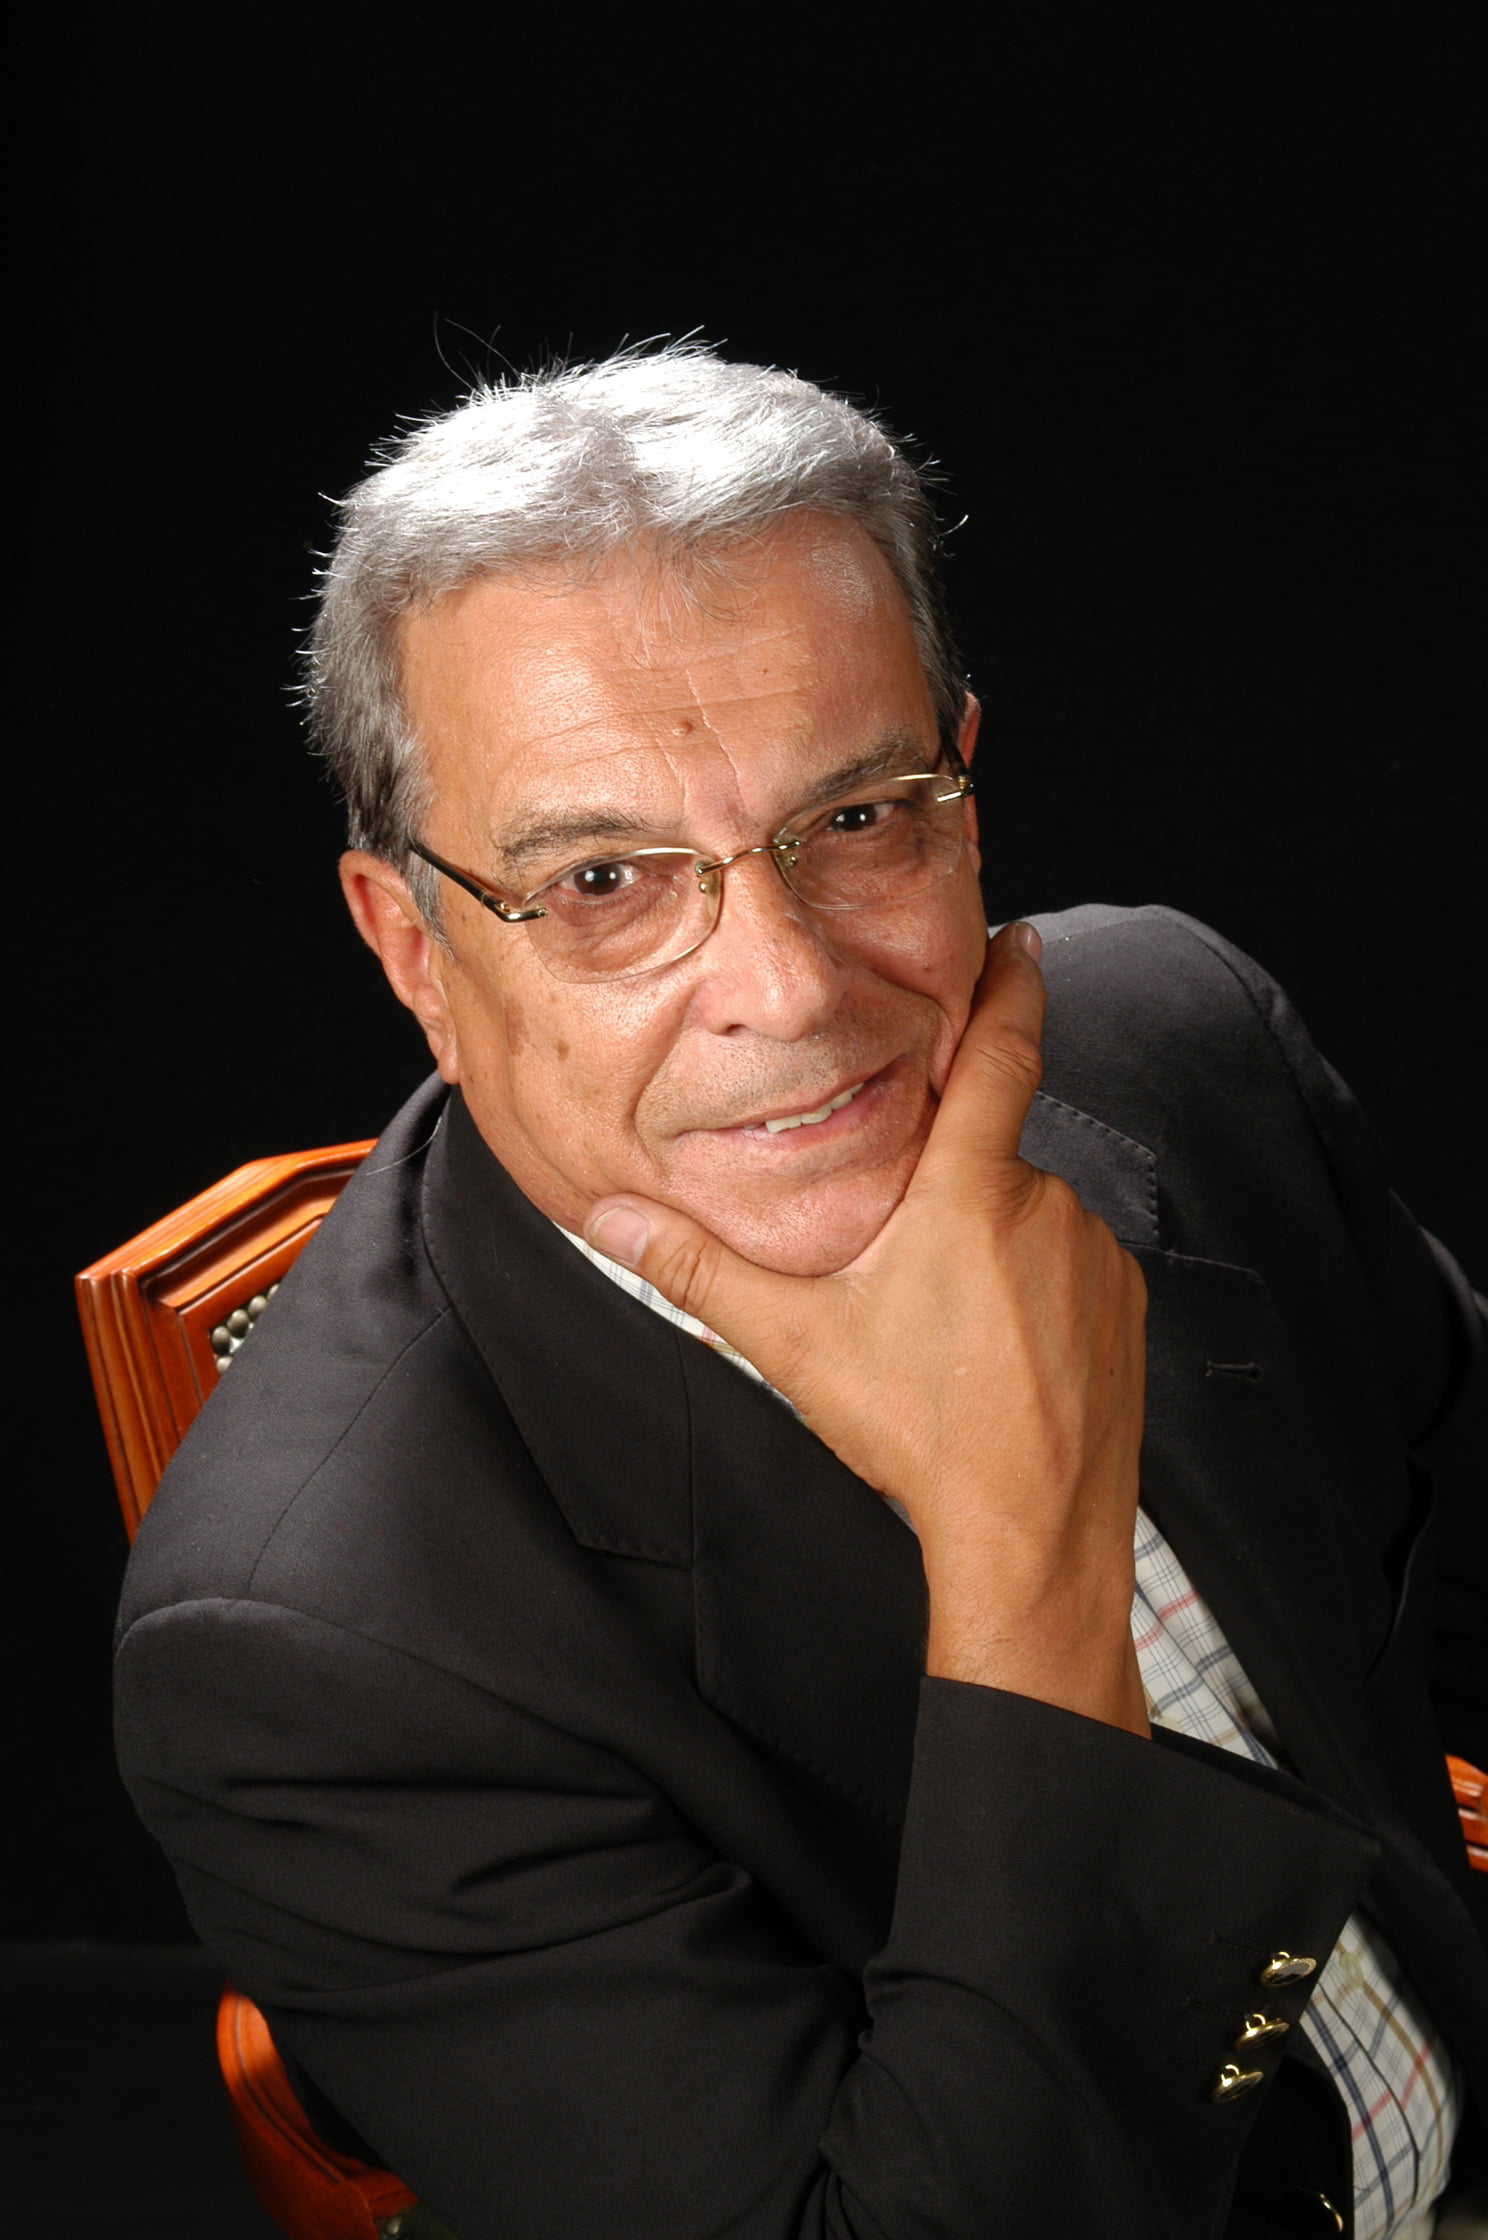 Sr. Miquel Rodergas Pagès